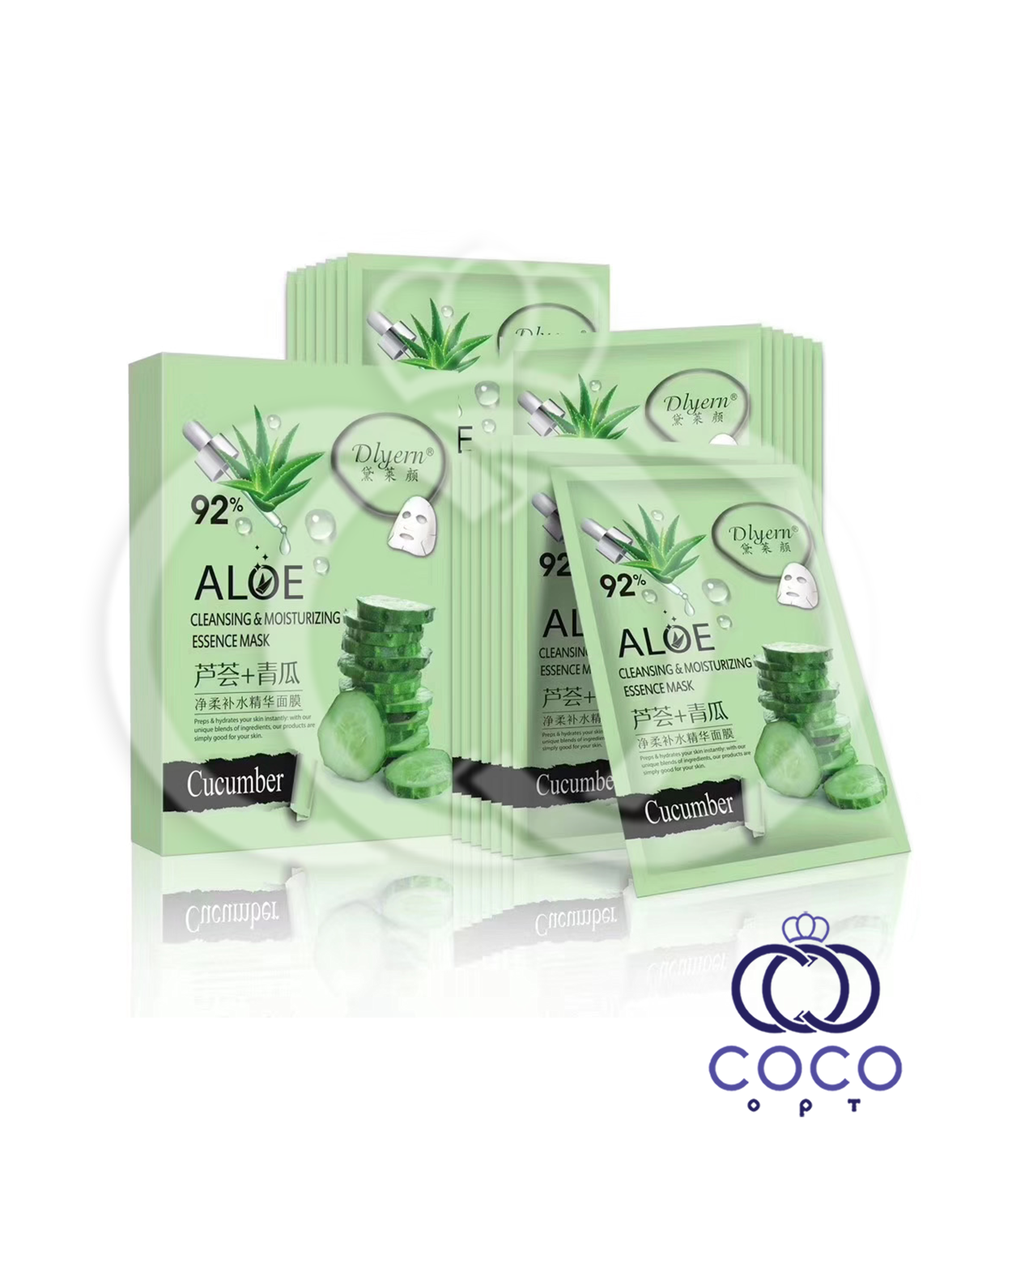 Тканевая маска Aloe 92% с экстрактом алоэ и огурца (10 штук)